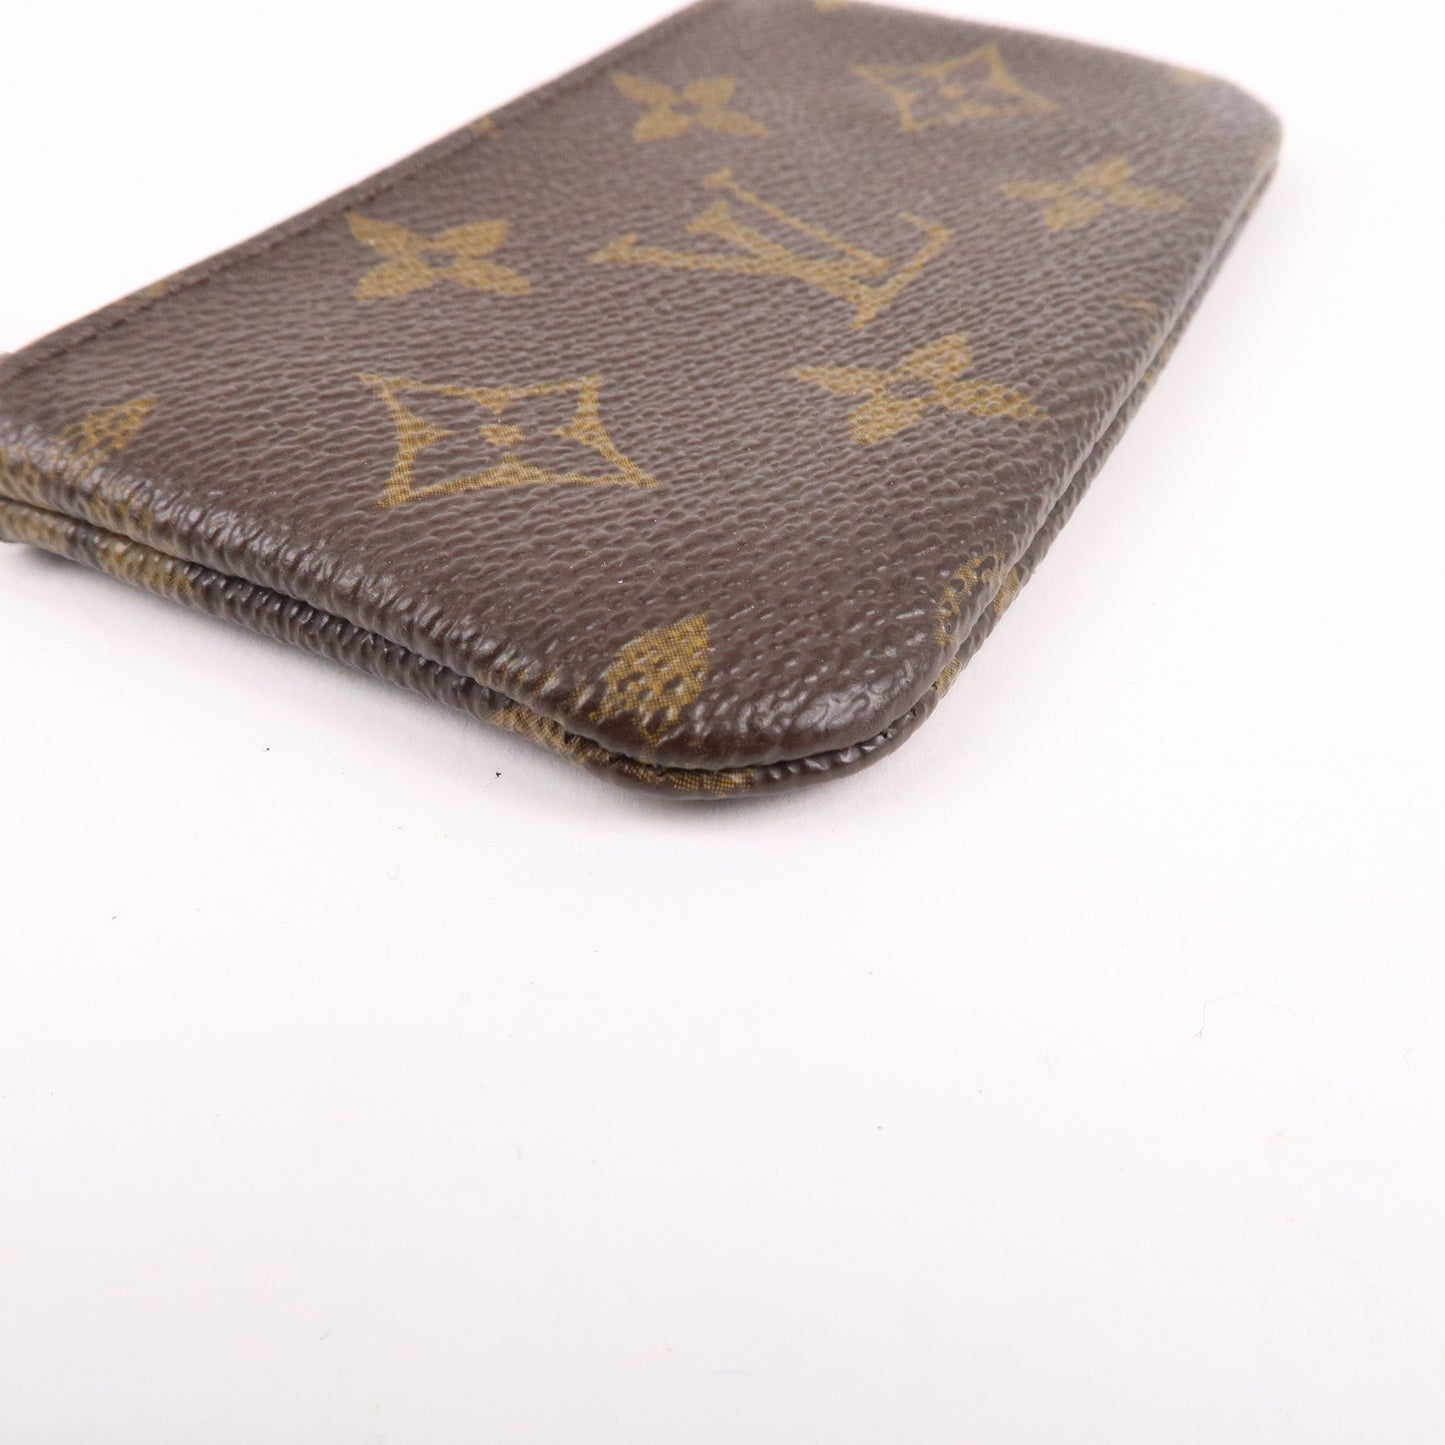 Louis Vuitton Monogram Set of 3 Coin Case M60067 M62650 M62650